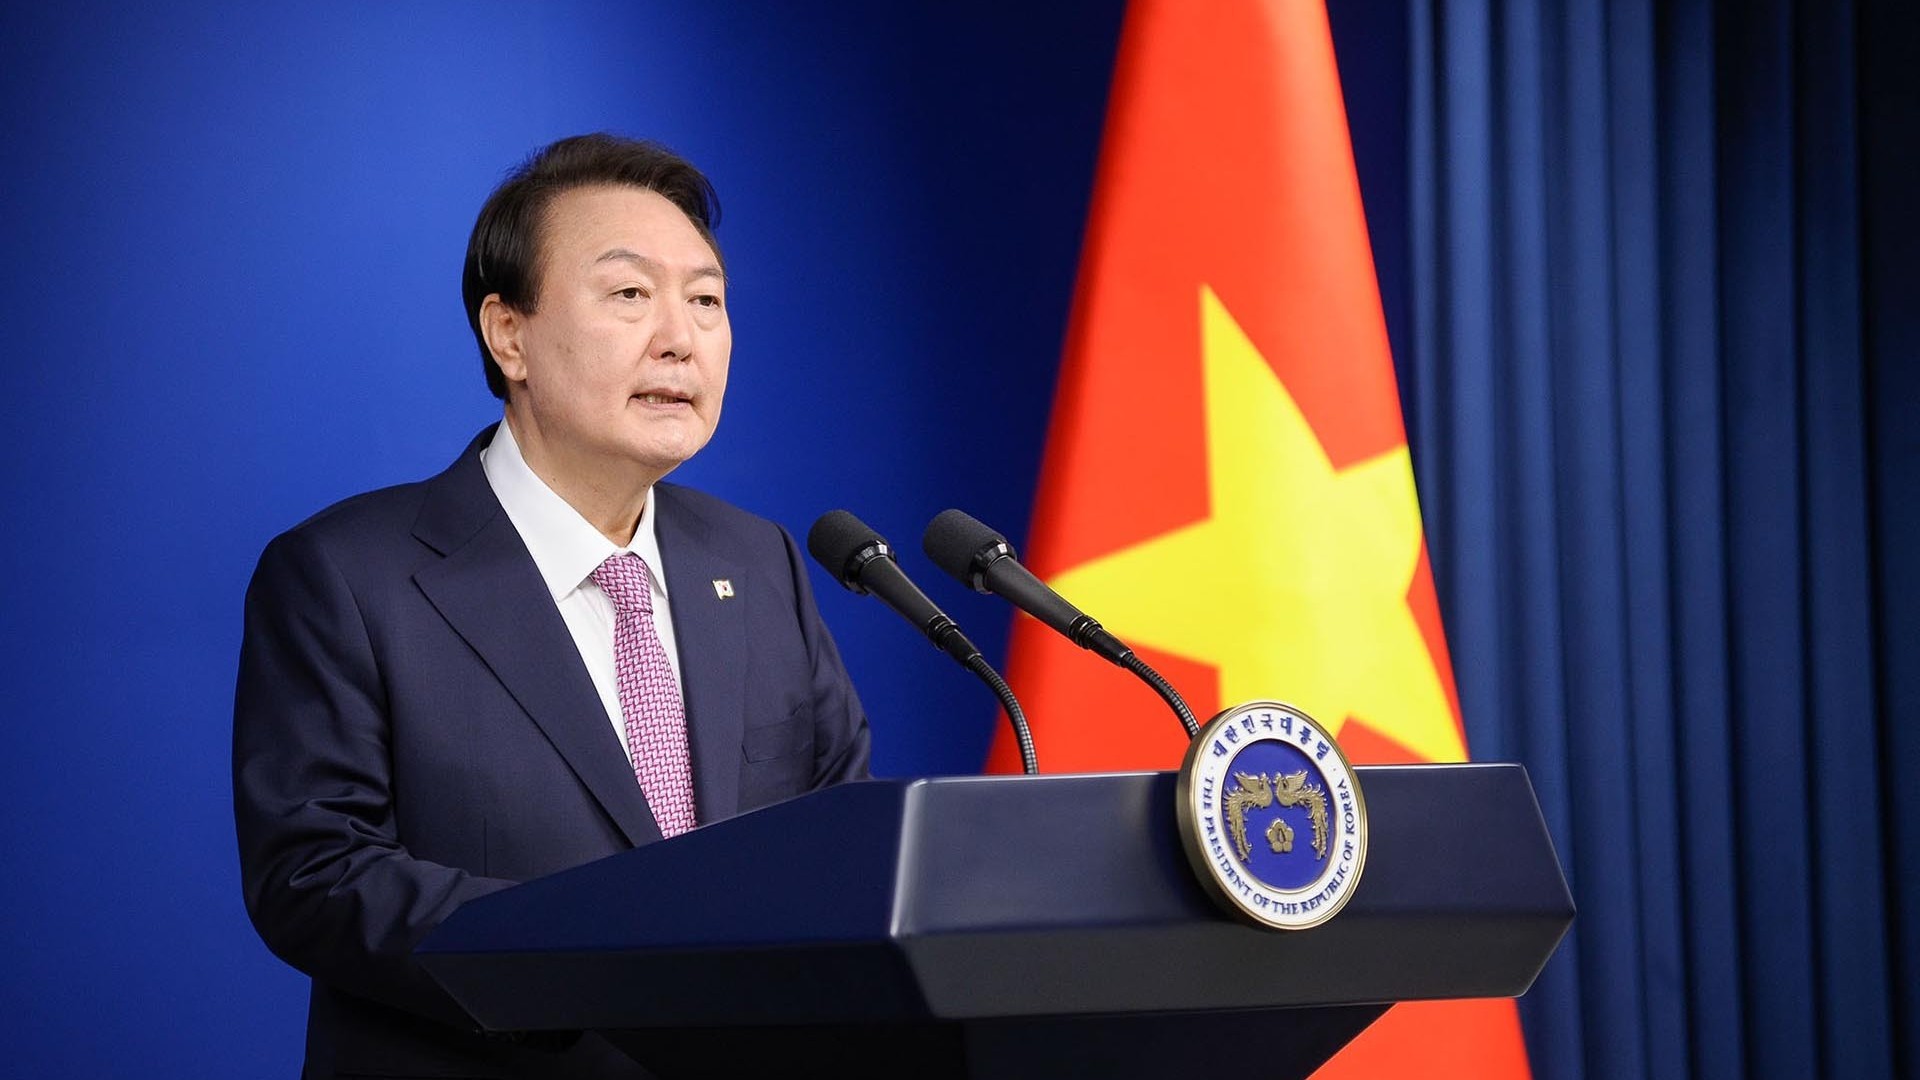 Tổng thống Hàn Quốc: Seoul sẽ tăng cường hợp tác theo định hướng tương lai, vì mục tiêu cùng Việt Nam thịnh vượng